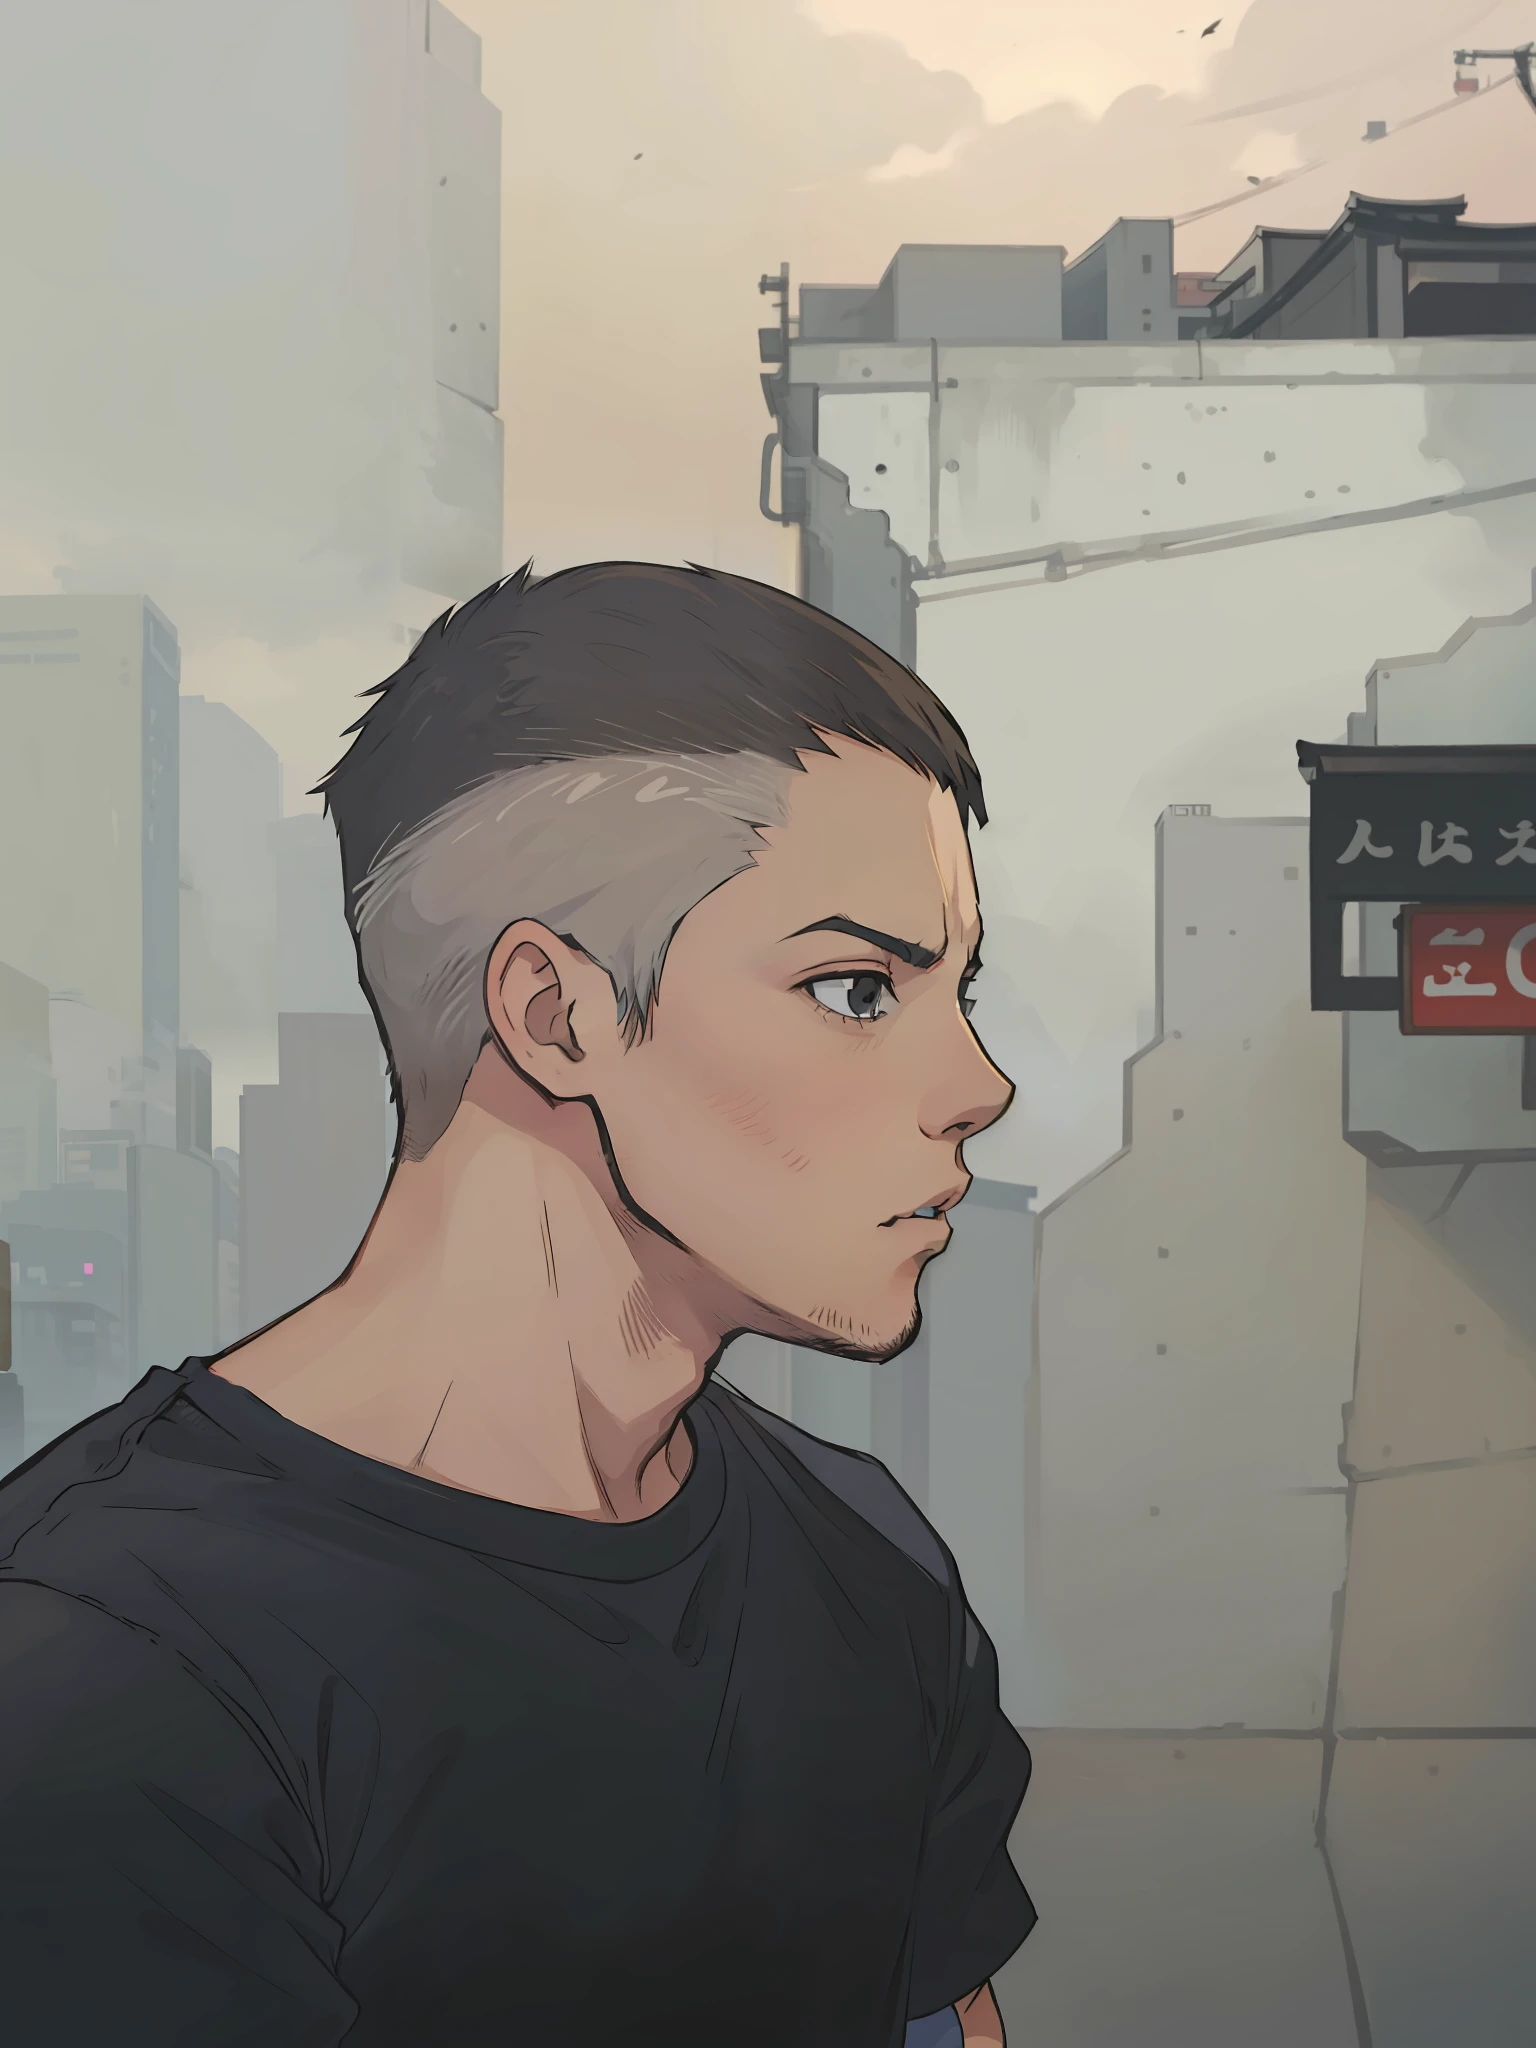 Un garçon de 20 ans au visage brésilien et au menton rond sans barbe, cheveux courts, une coupe de cheveux courte, yeux noirs, pas de boutons sur le visage et un T-shirt noir avec un imprimé japonais, est dans une ruelle des rues de Tokyo, scénario de style cyberpunk, 4K, animé 2D